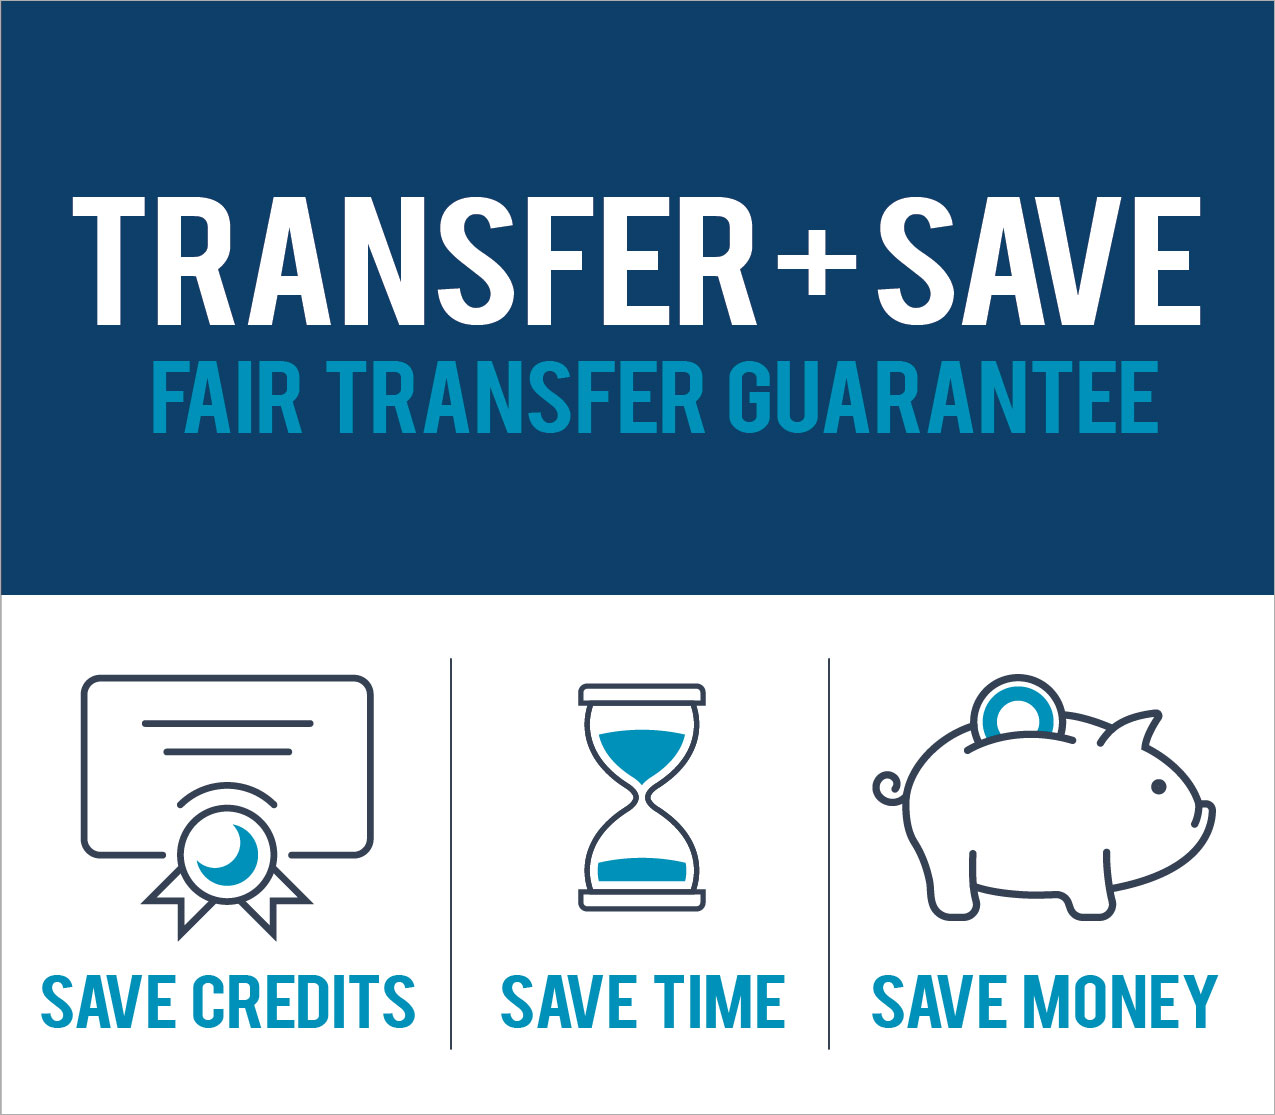 Fair Transfer Guarantee